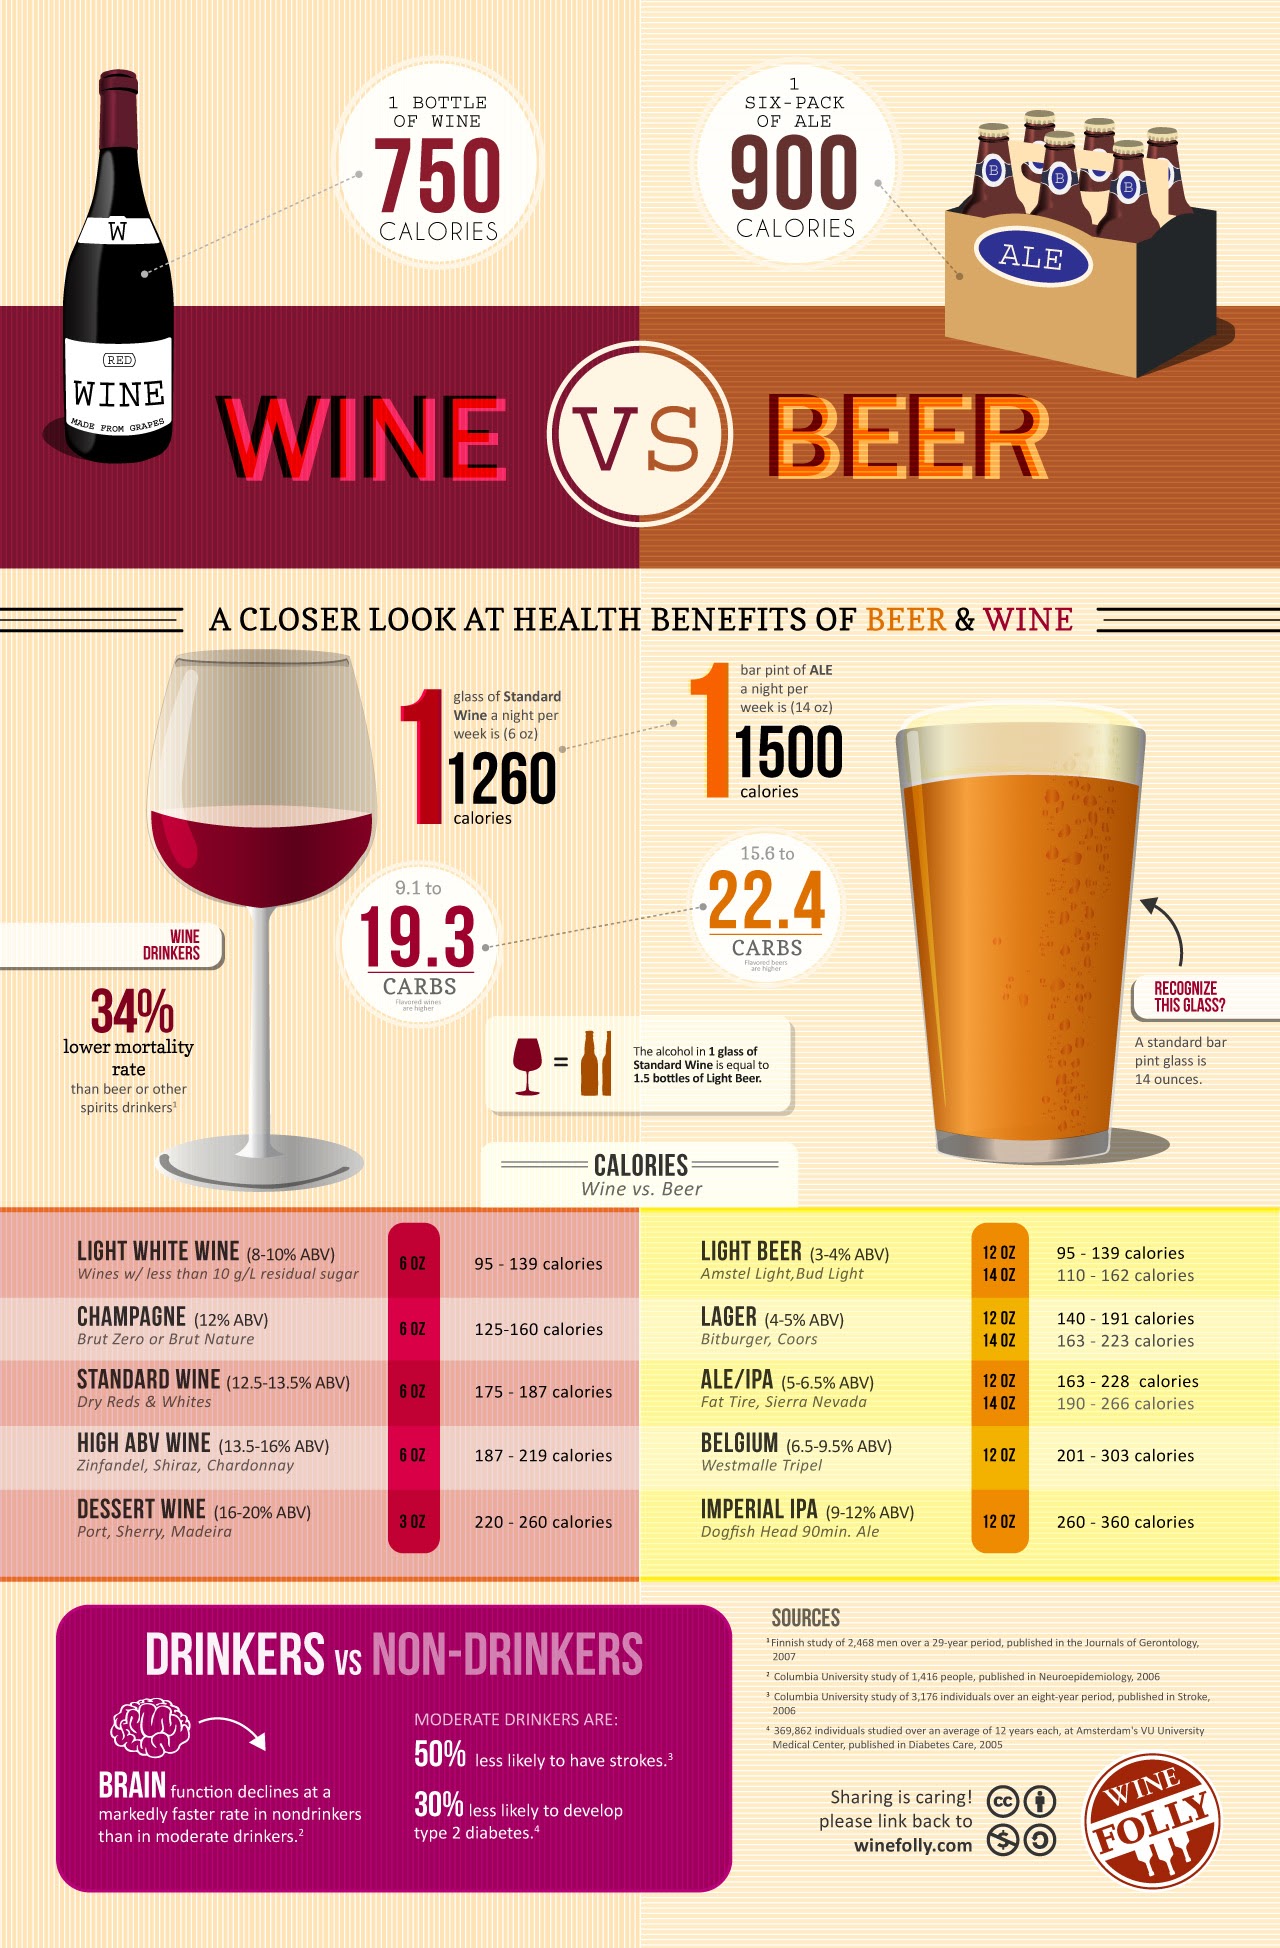 Calories in Wine vs Beer Infographic